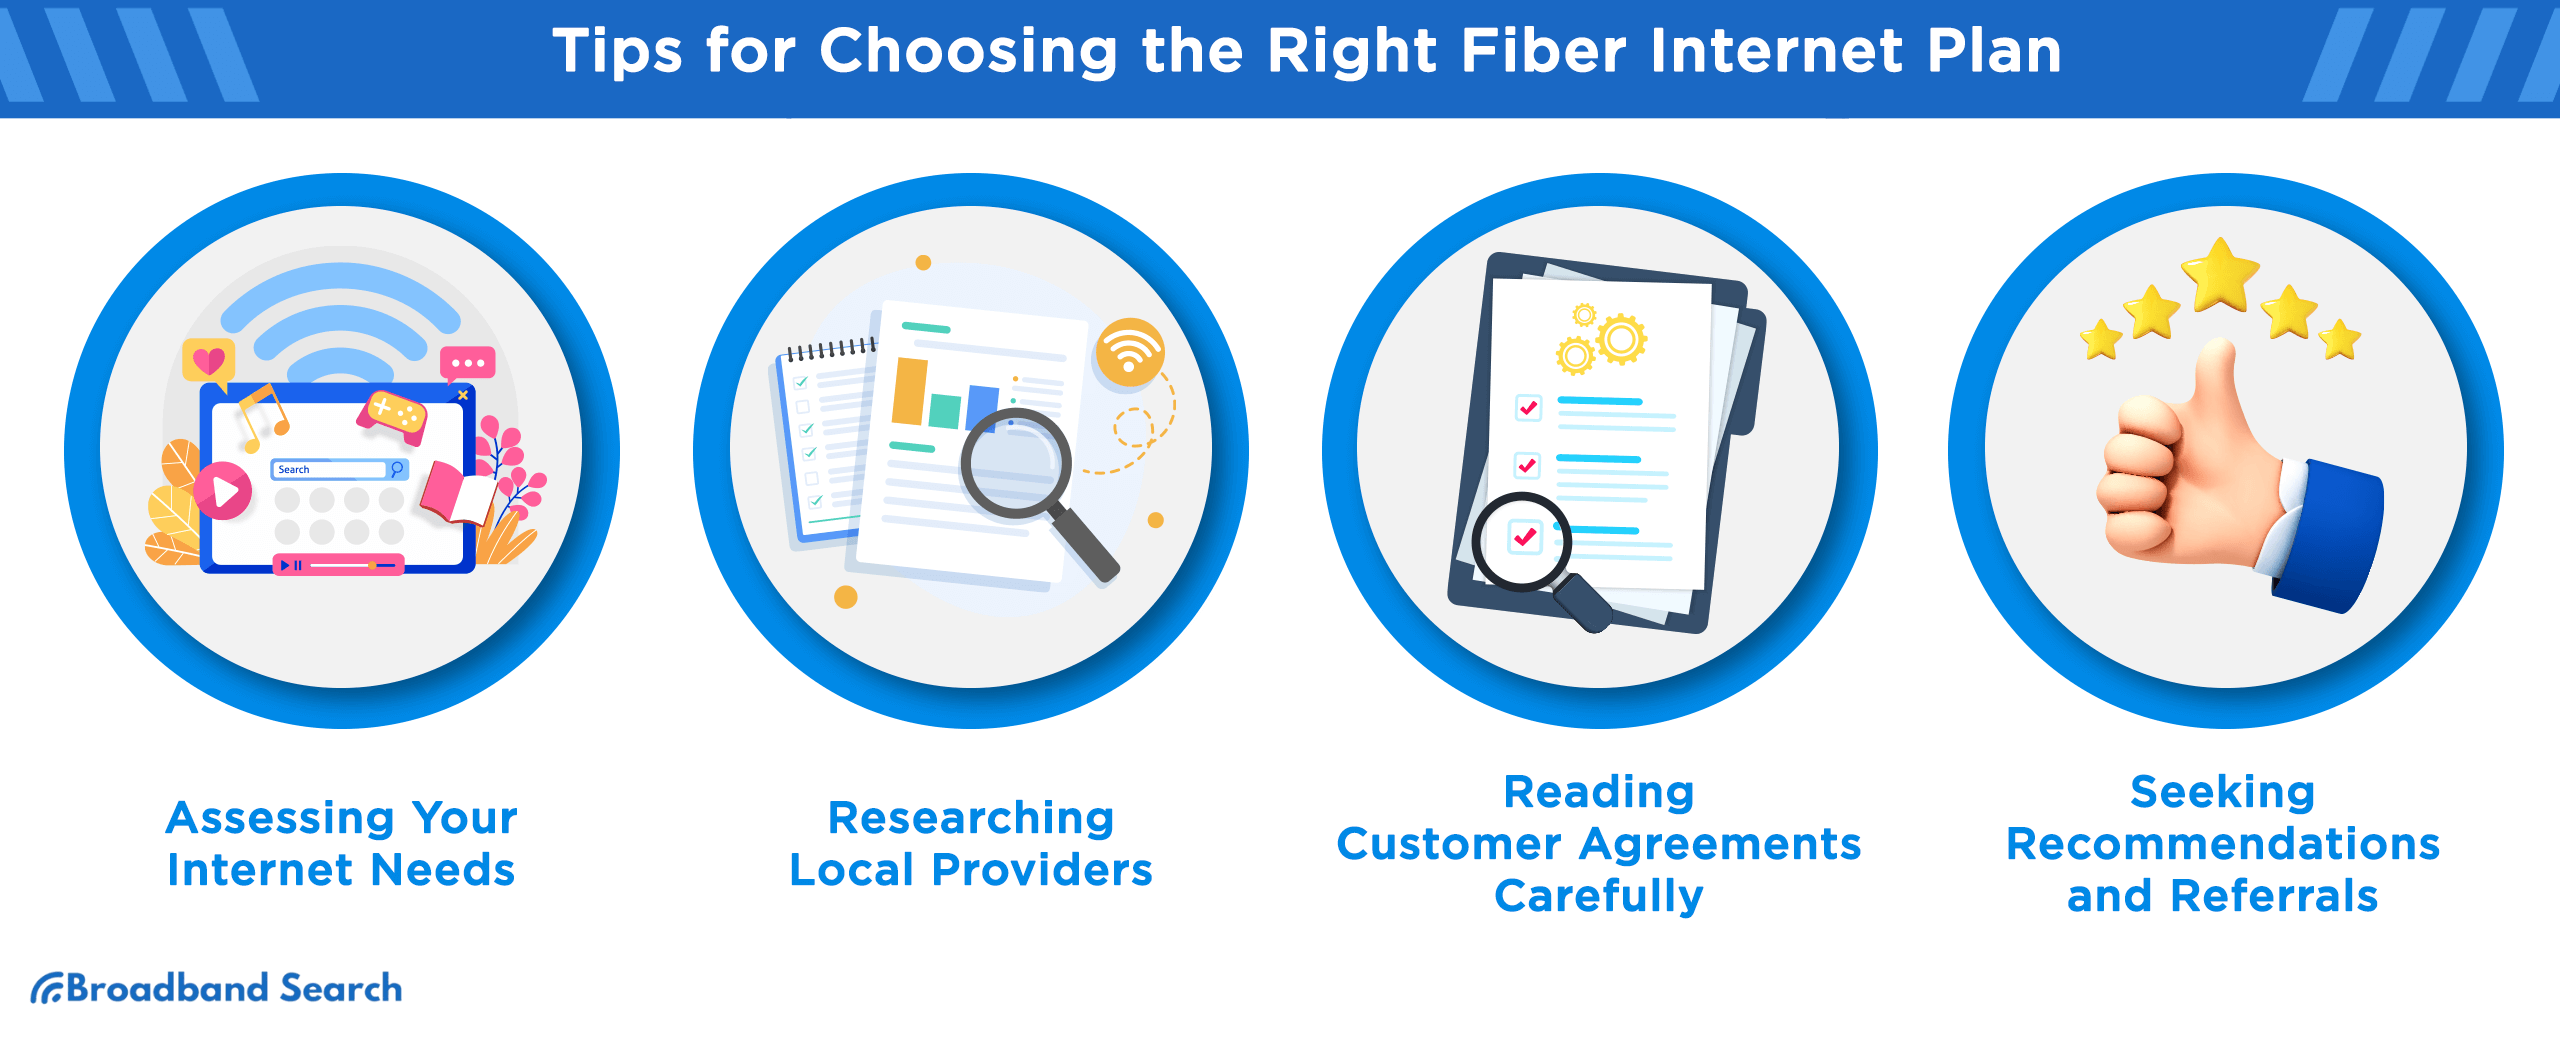 Tips for choosing the right fiber internet plan